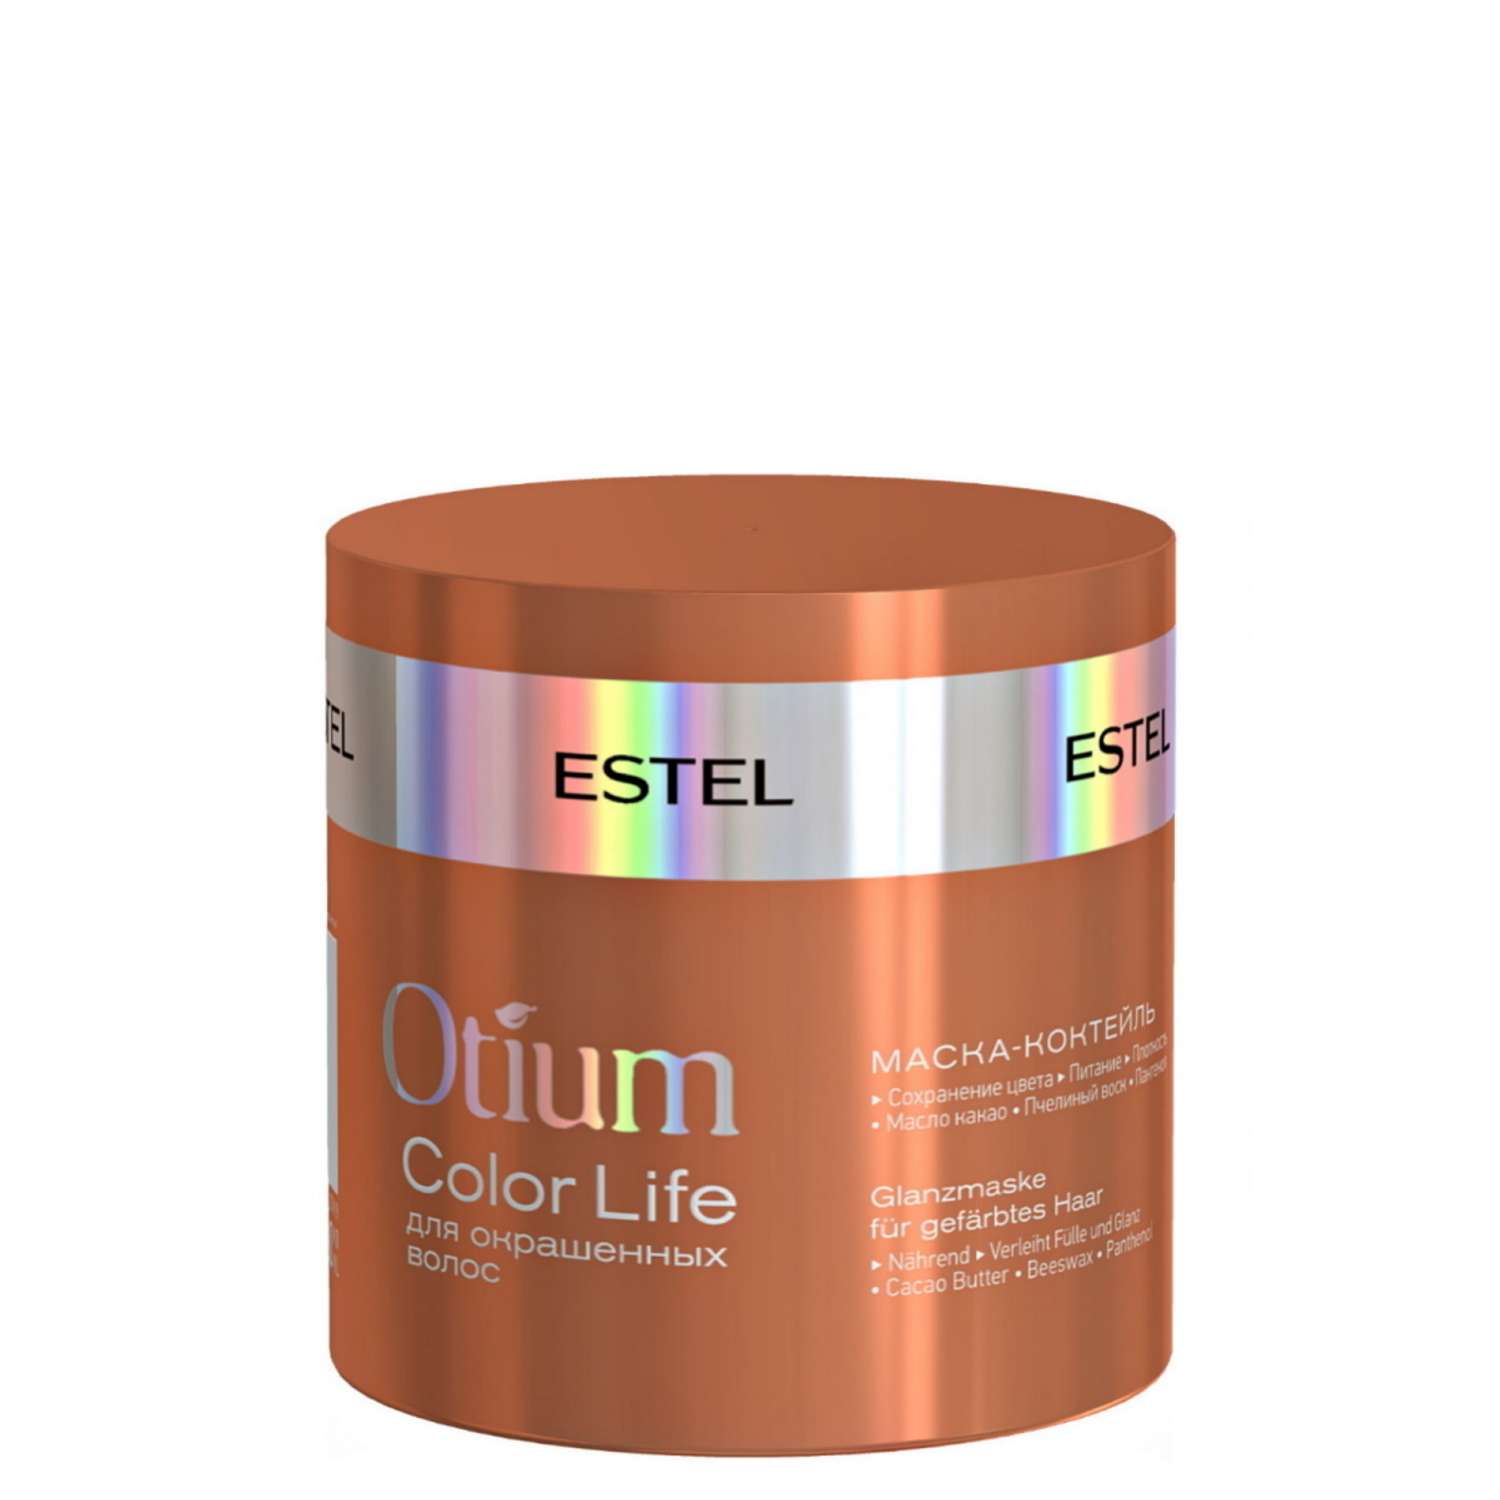 Маска-коктейль ESTEL OTIUM COLOR LIFE для окрашенных волос 300 мл - фото 1